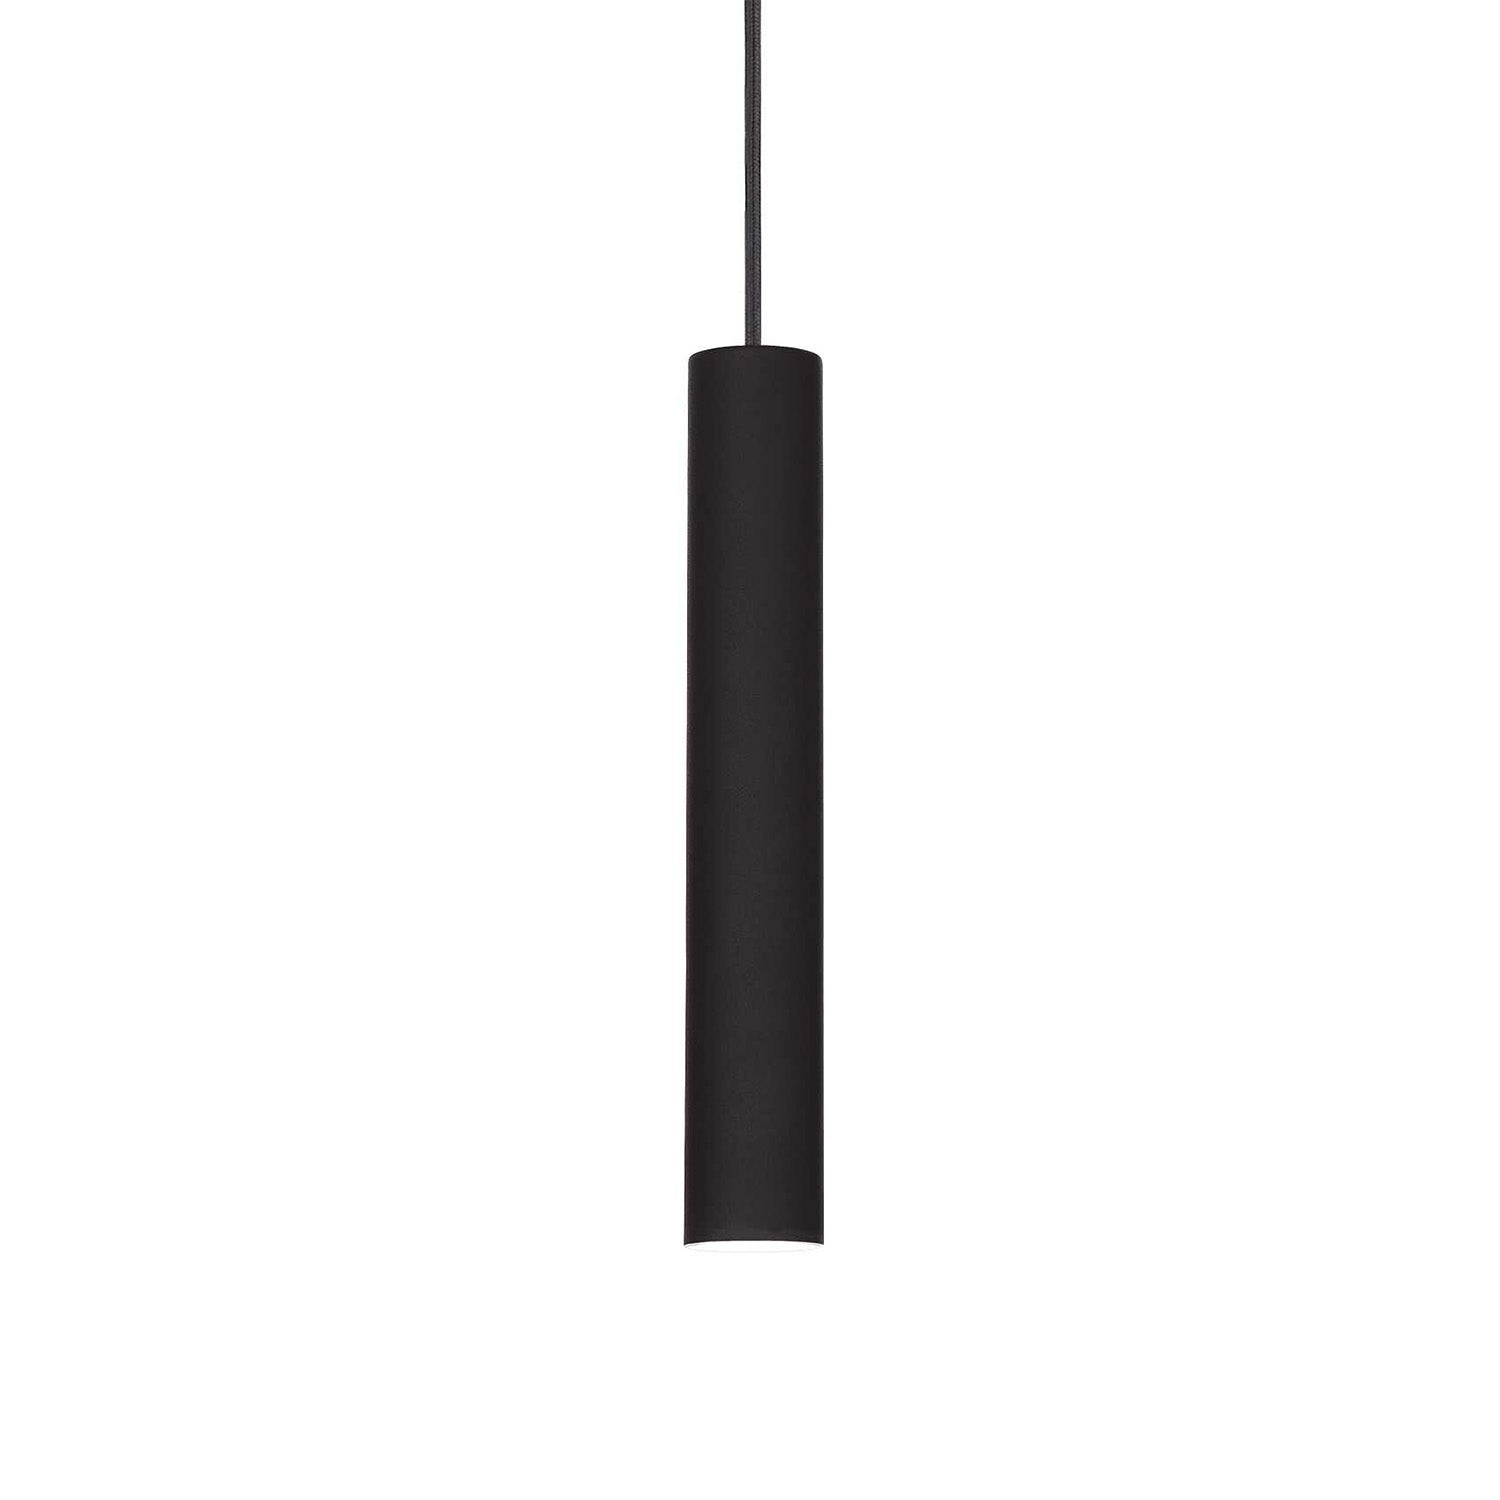 TUBE - Integrated LED tube pendant light in black or white steel